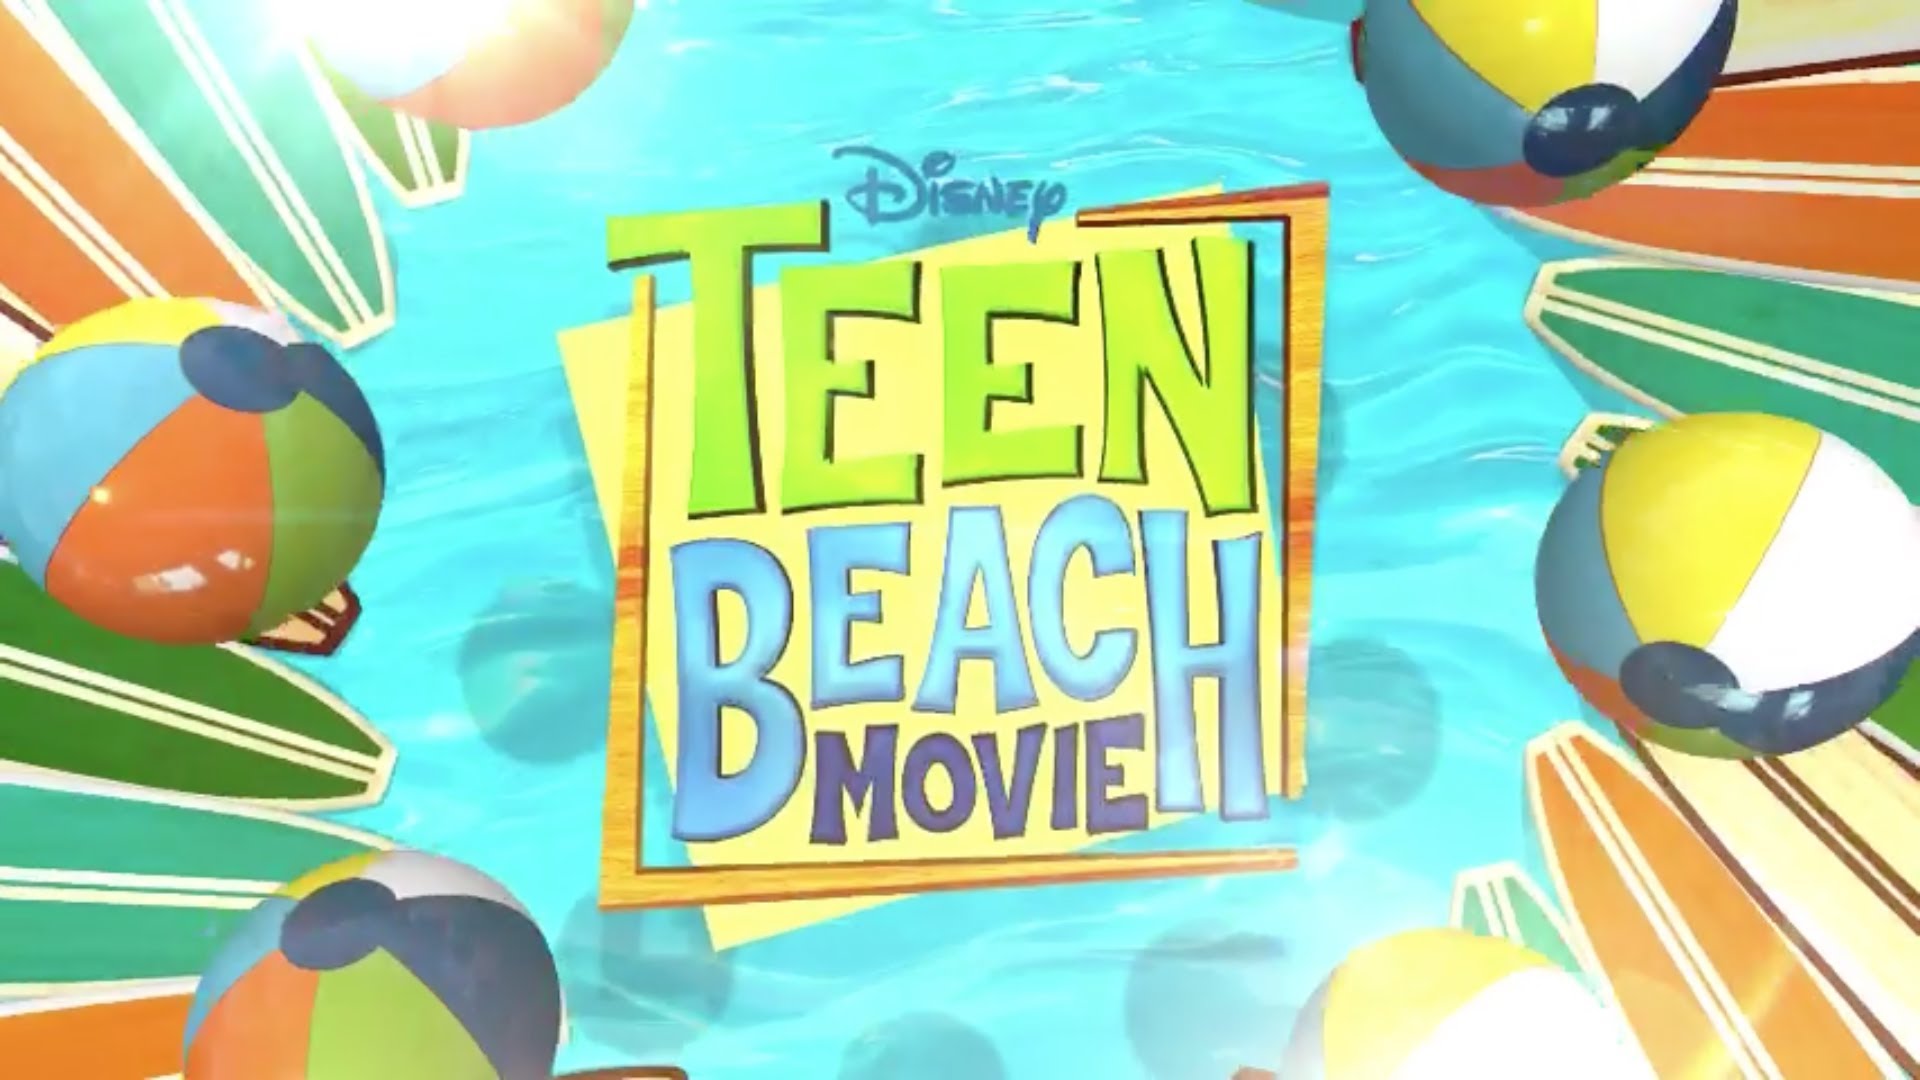 Hd Teens Beach